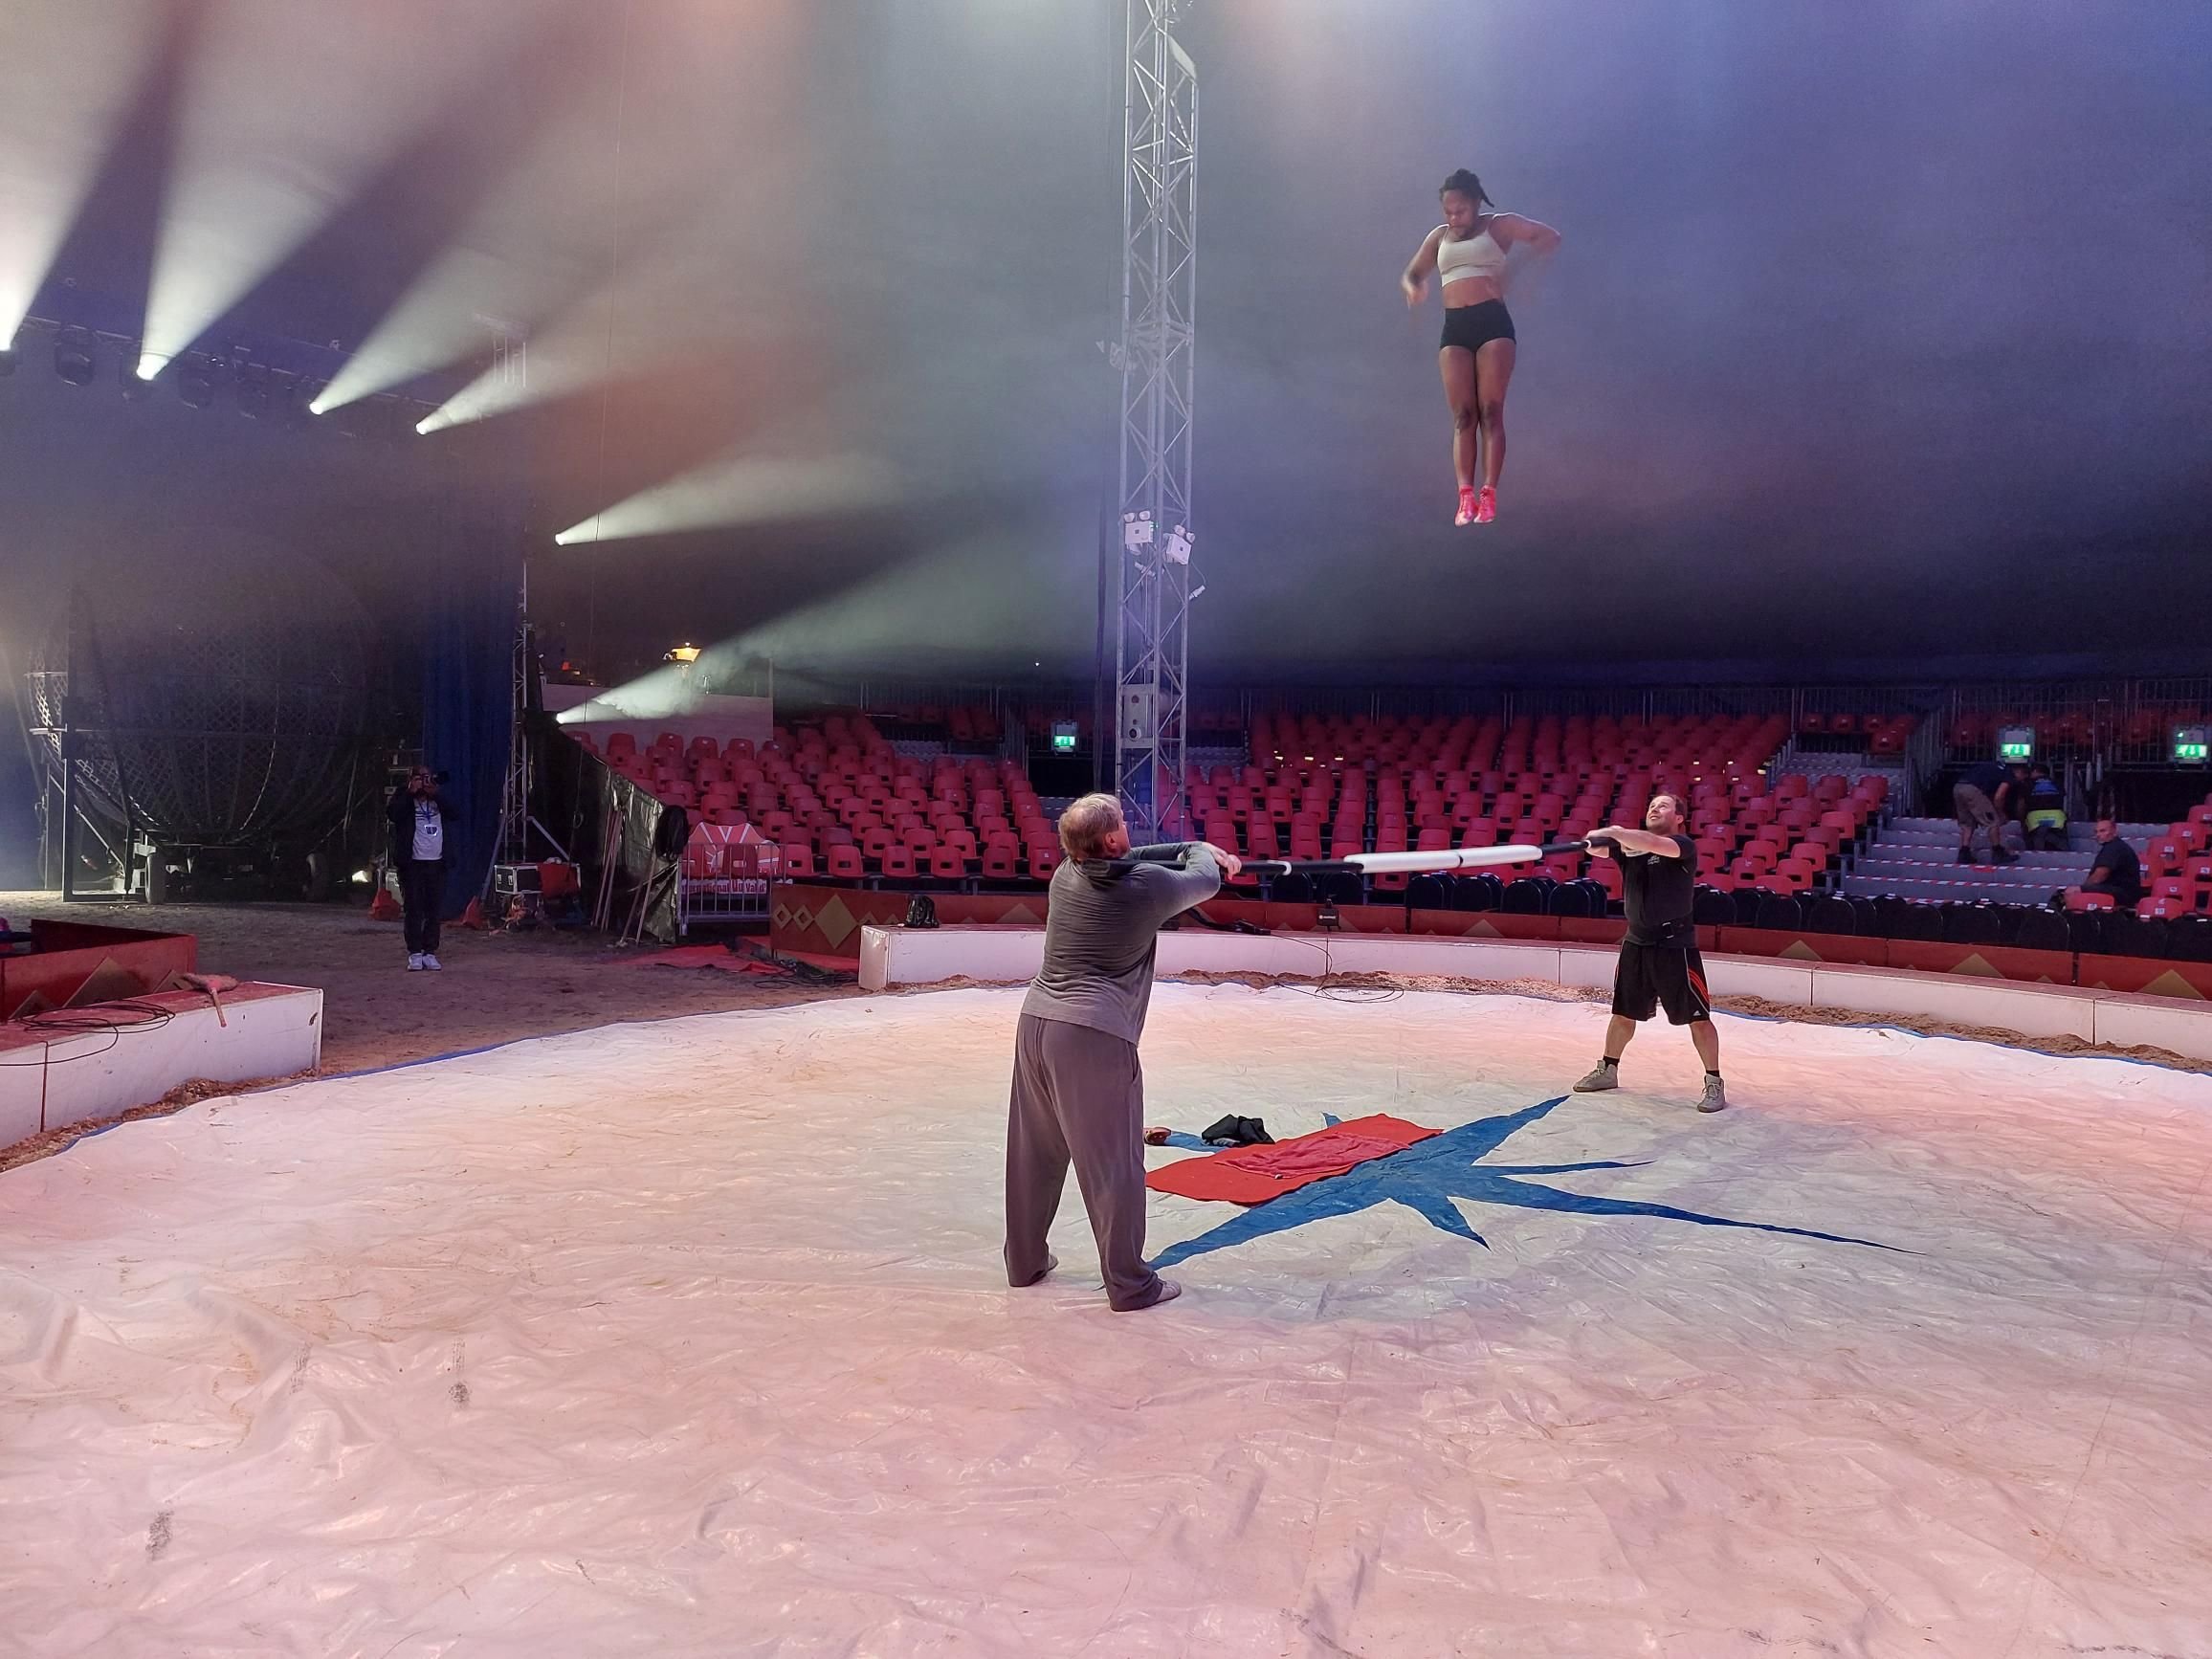 Neuf séances sont programmées pour le Festival international du cirque de Domont (Val-d'Oise), qui se déroule de ce vendredi 29 septembre à dimanche 1er octobre. LP/C.L.